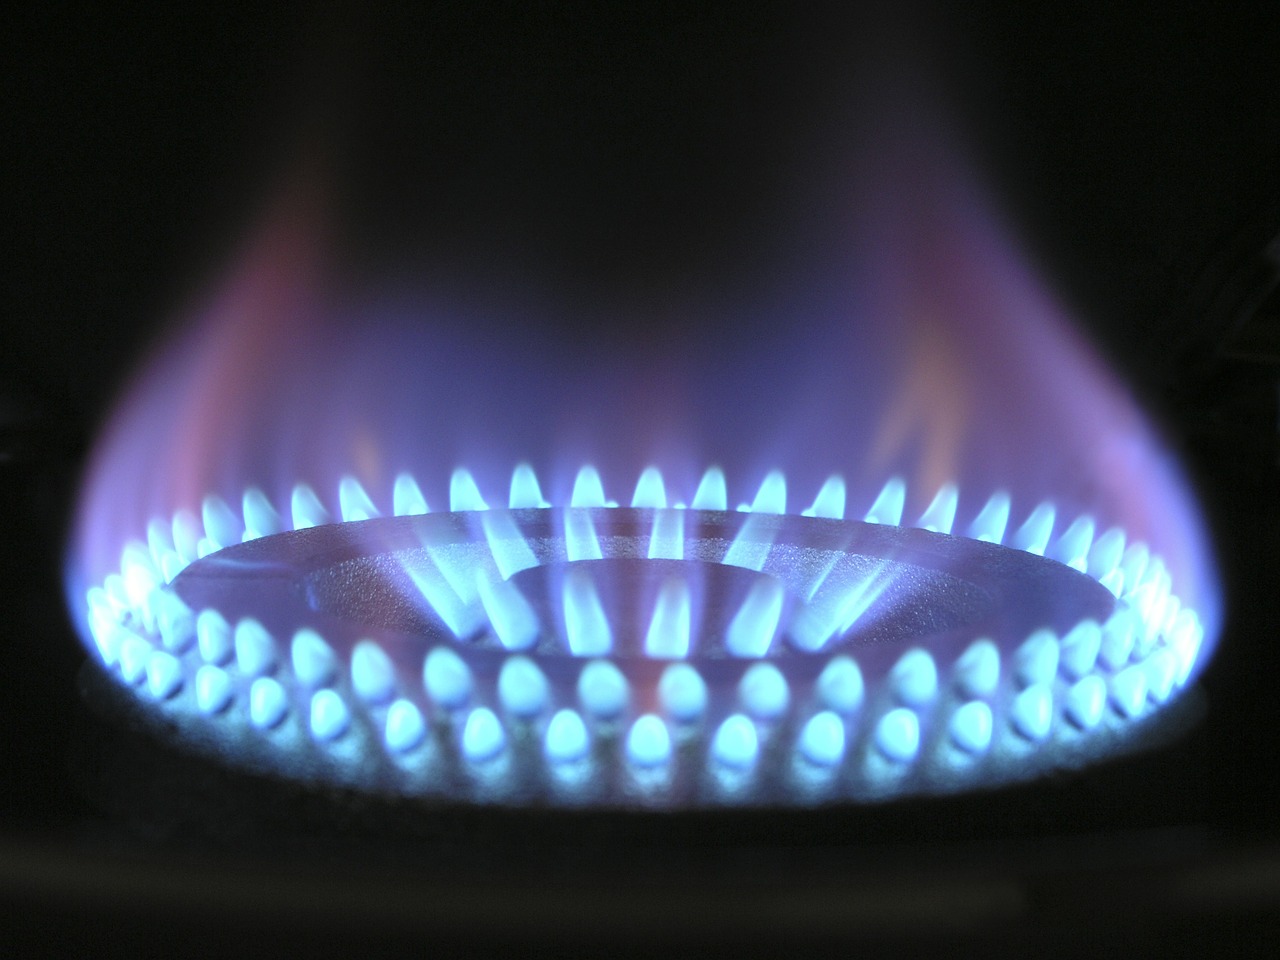 La fin des tarifs réglementés du gaz, c’est pour 2023